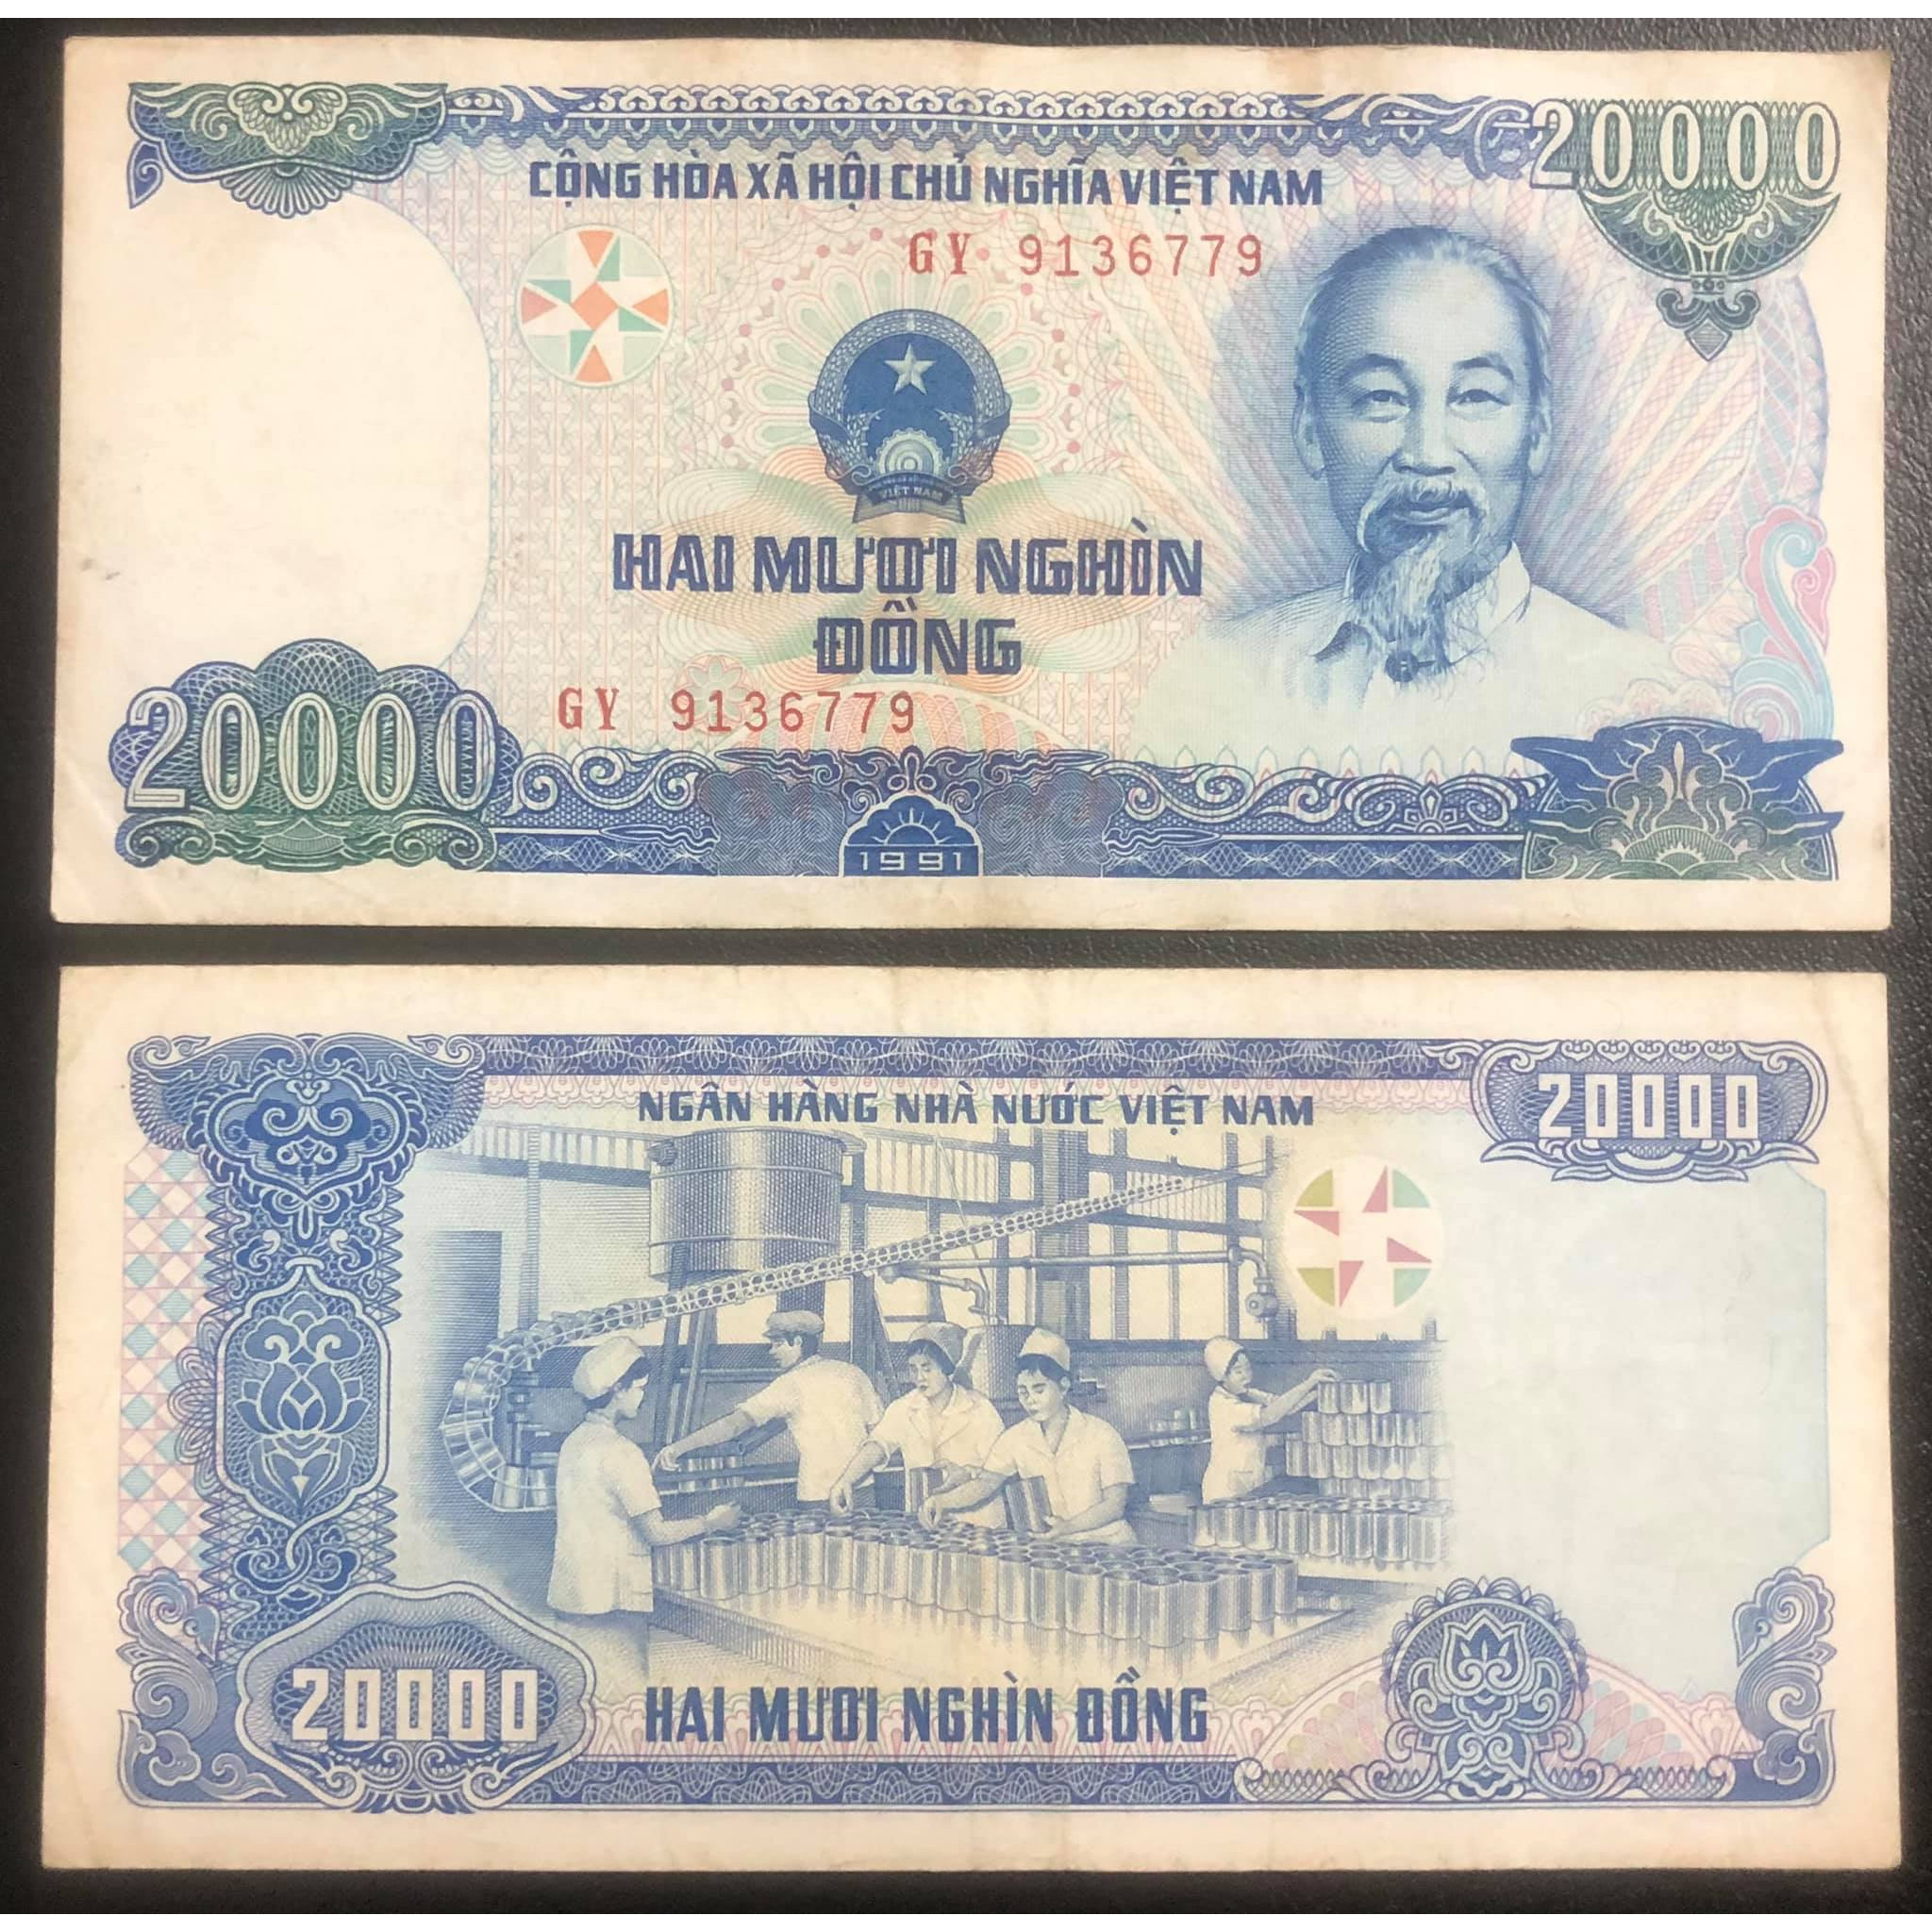 Tiền Việt Nam 20 ngàn đồng 1994 số seri đuôi 79 thần tài lớn